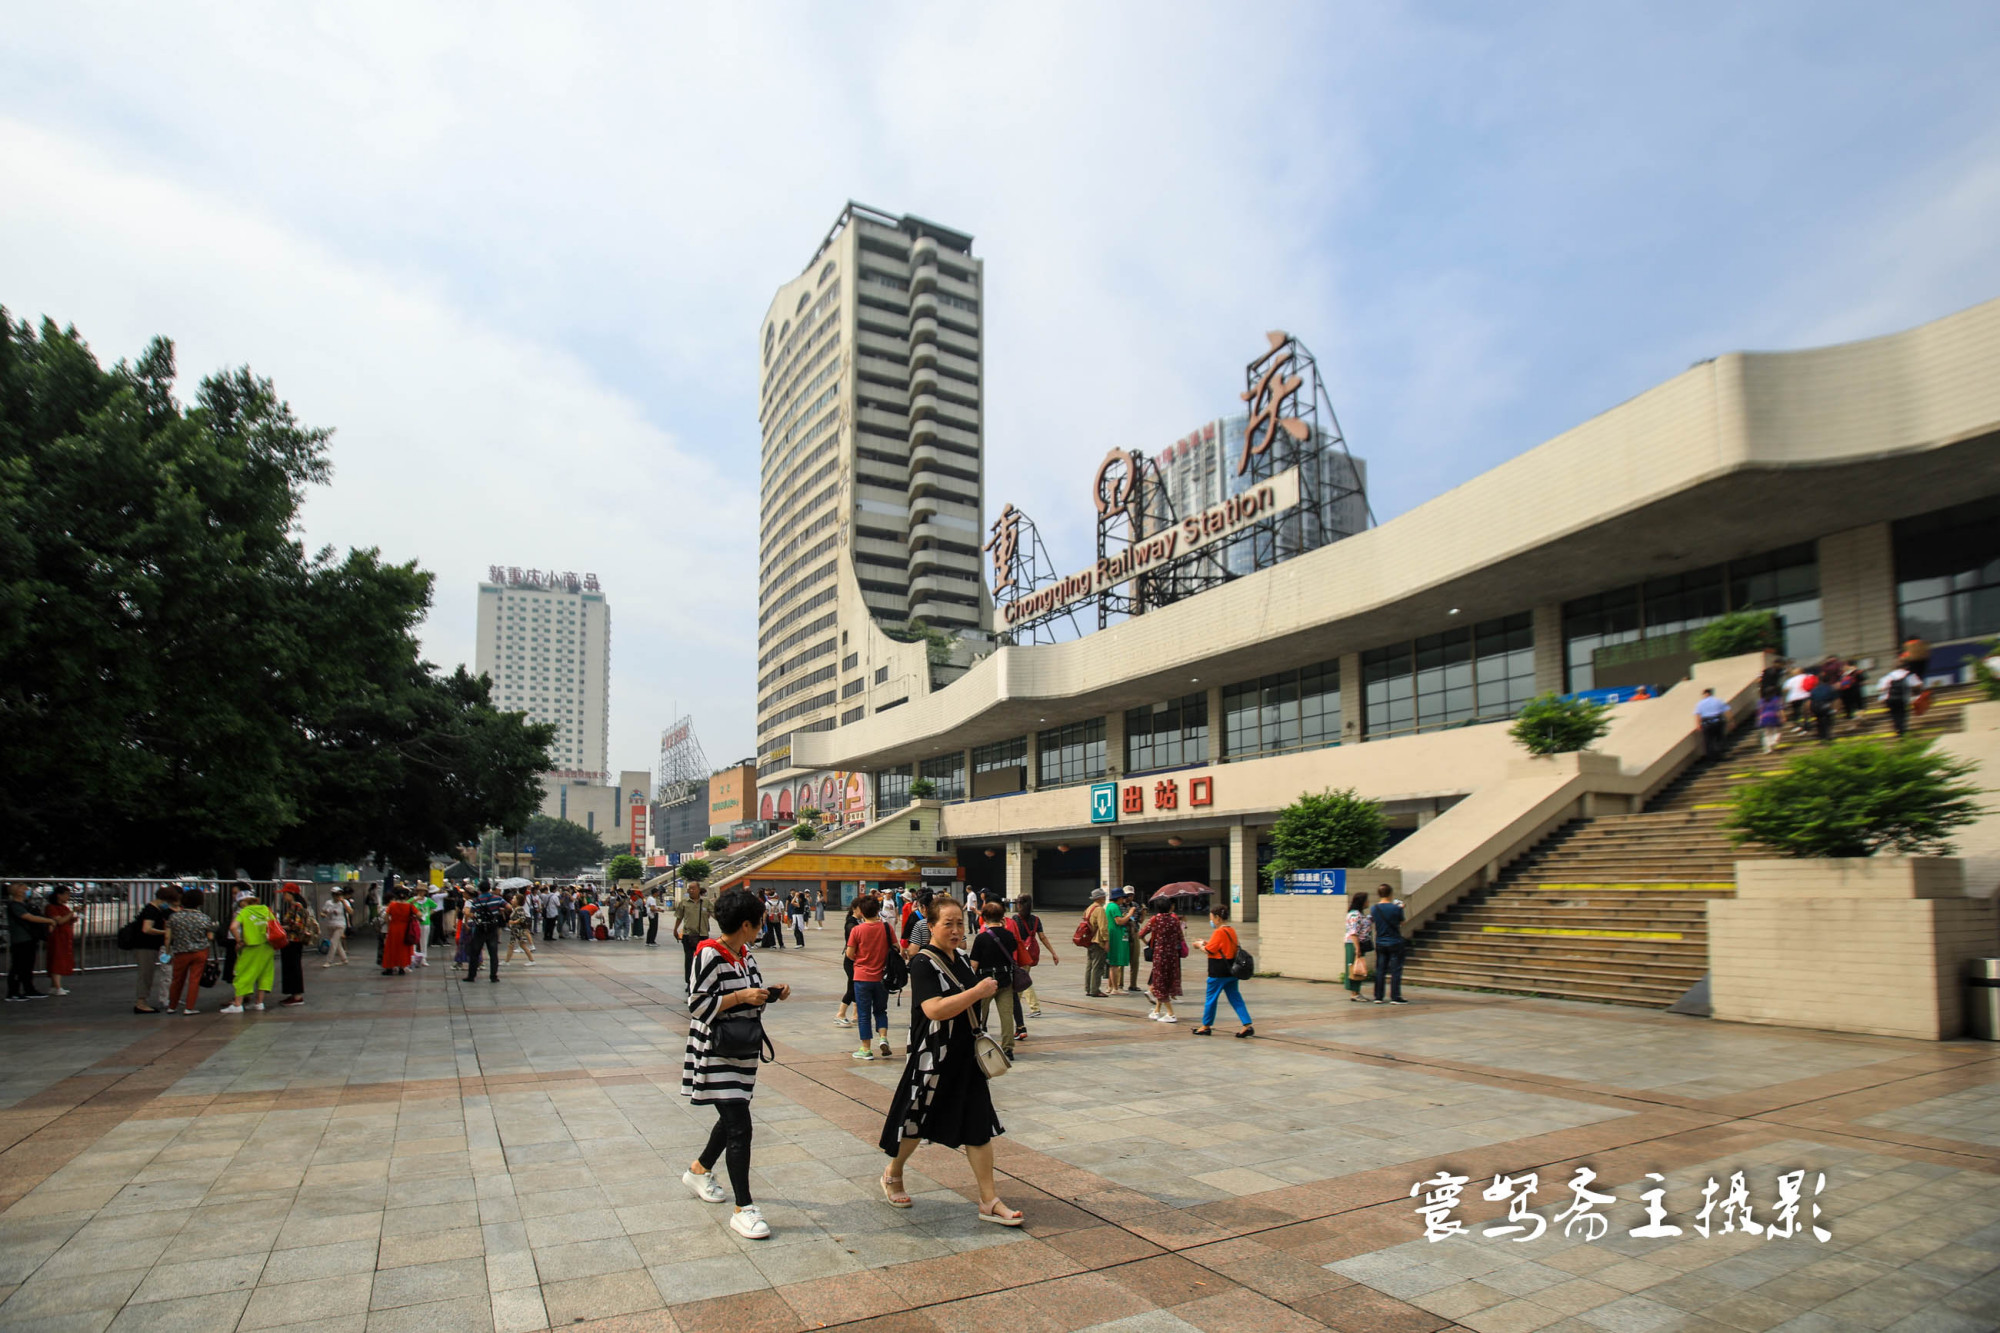 重庆北站 北广场---南广场：最新拍 108张实景图片 详细解读。( 铁路爱好者进来看) - 城市论坛 - 天府社区